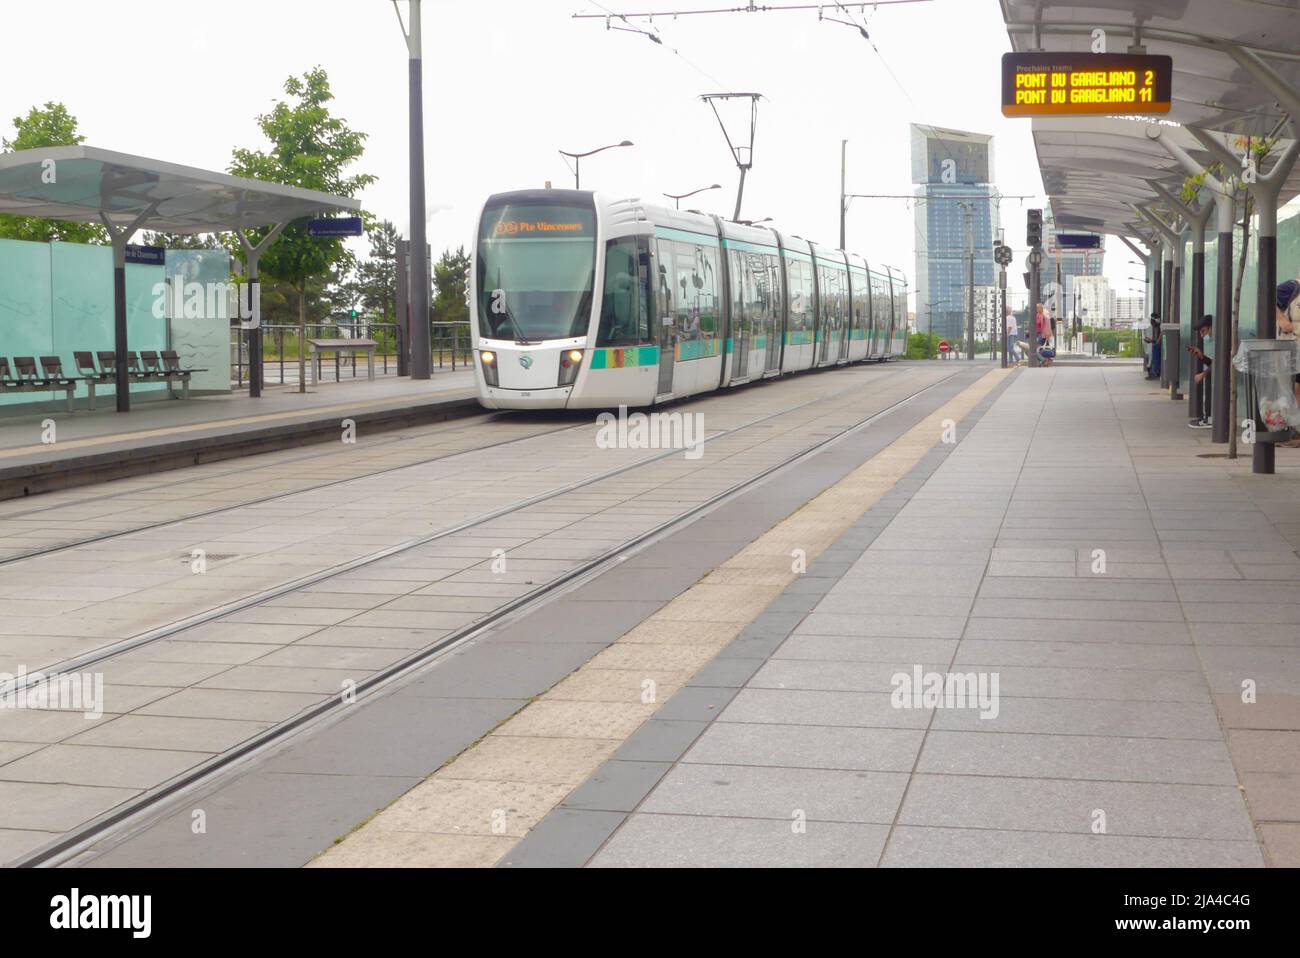 Paris, France. Mai 22. 2022. Passage en tramway à la gare de Bercy. Transports publics et écologiques. Banque D'Images